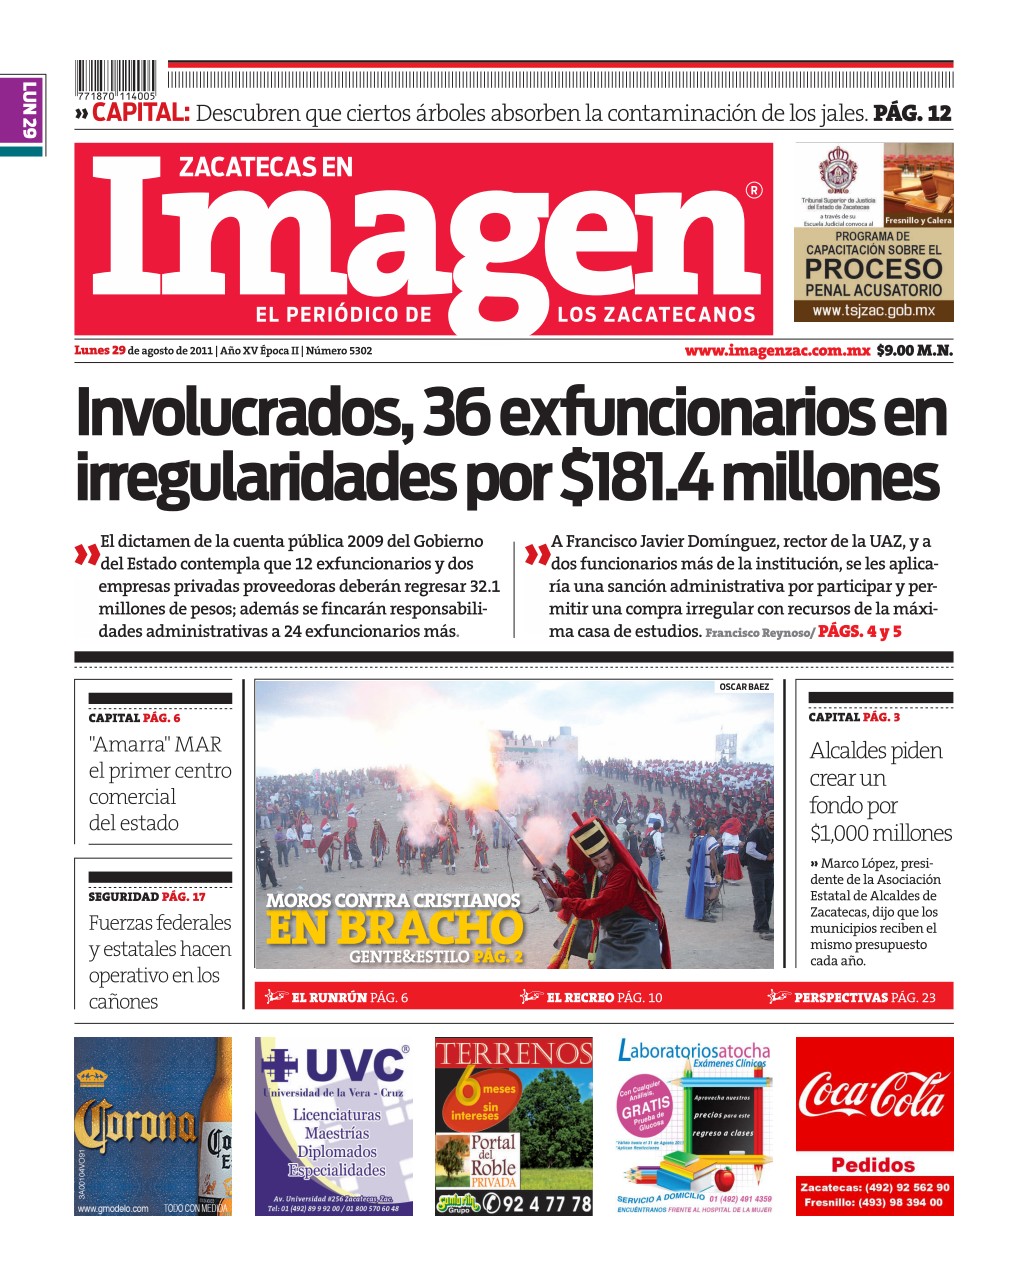 Imagen Zacatecas edición del 29 de Agosto 2011